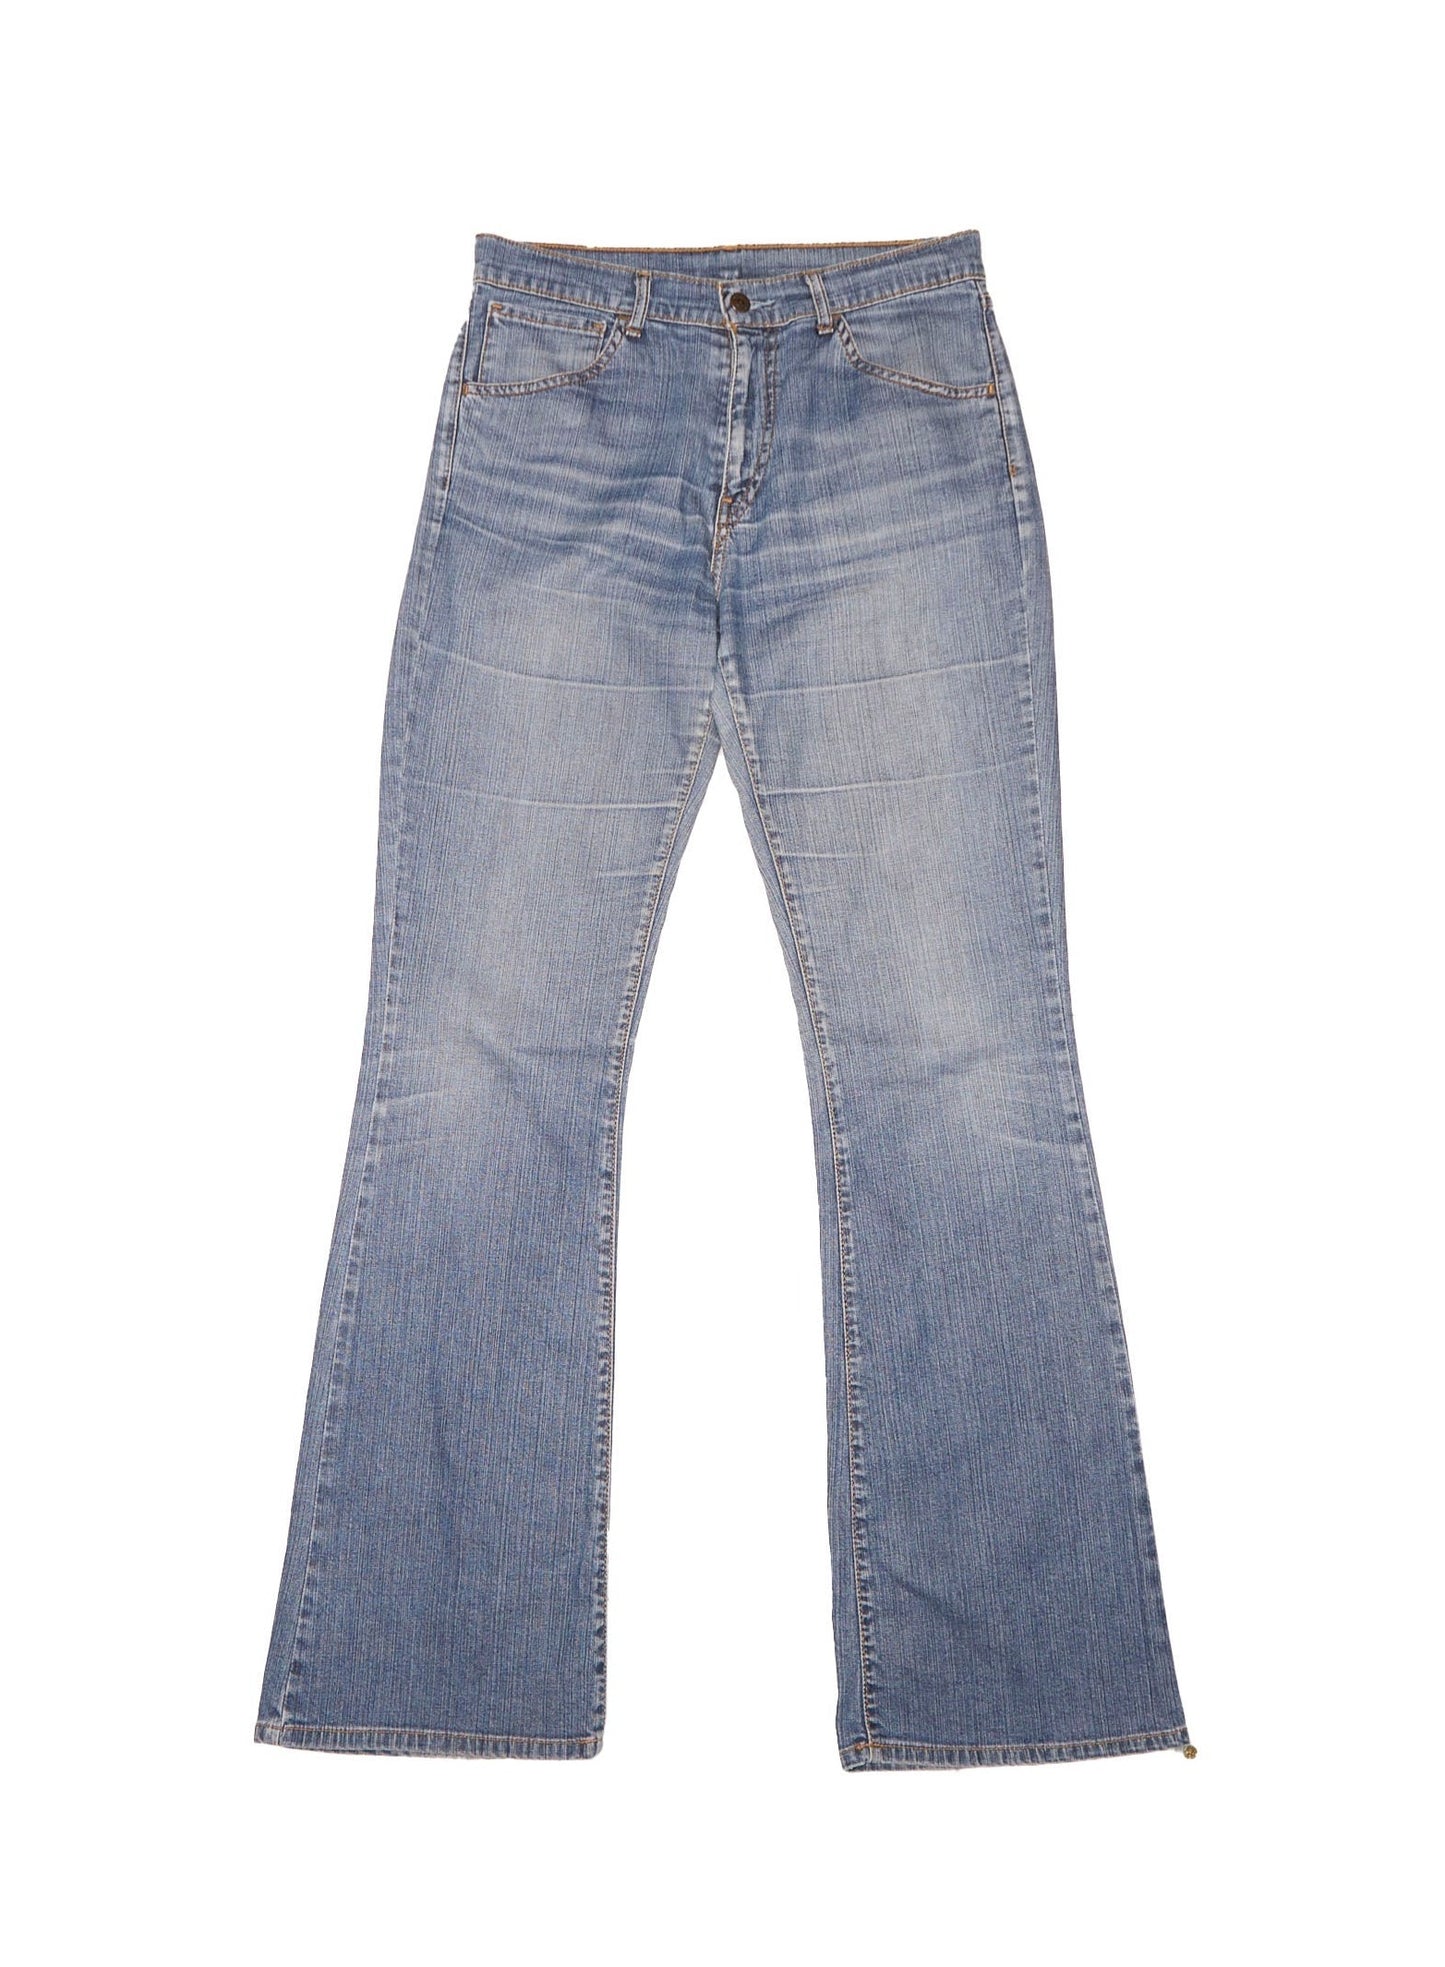 Zip Levis Boot Cut Jeans - W30" L32"